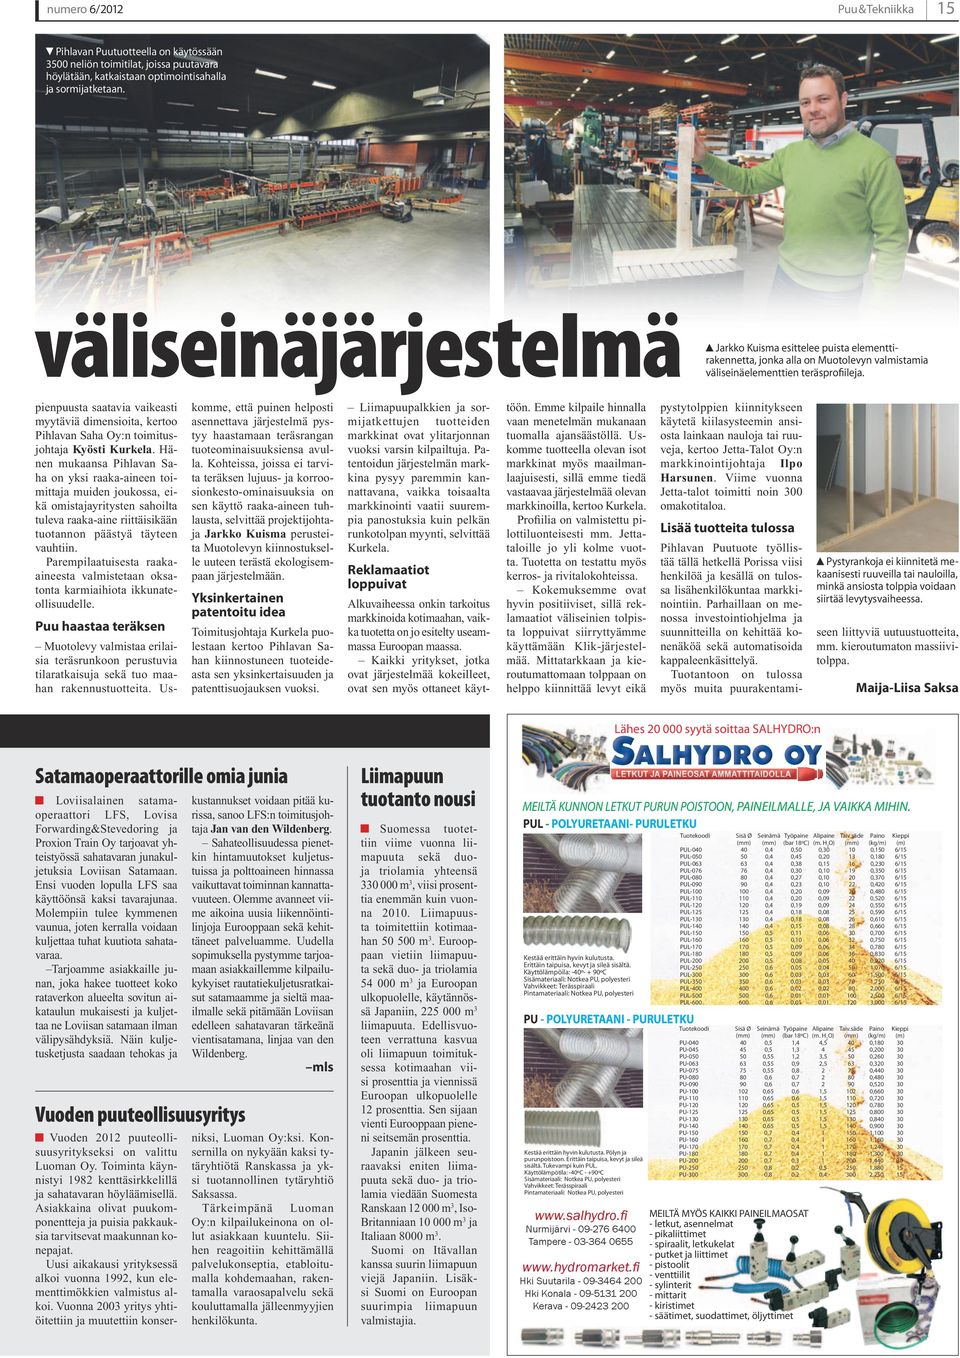 pienpuusta saatavia vaikeasti myytäviä dimensioita, kertoo Pihlavan Saha Oy:n toimitusjohtaja Kyösti Kurkela.